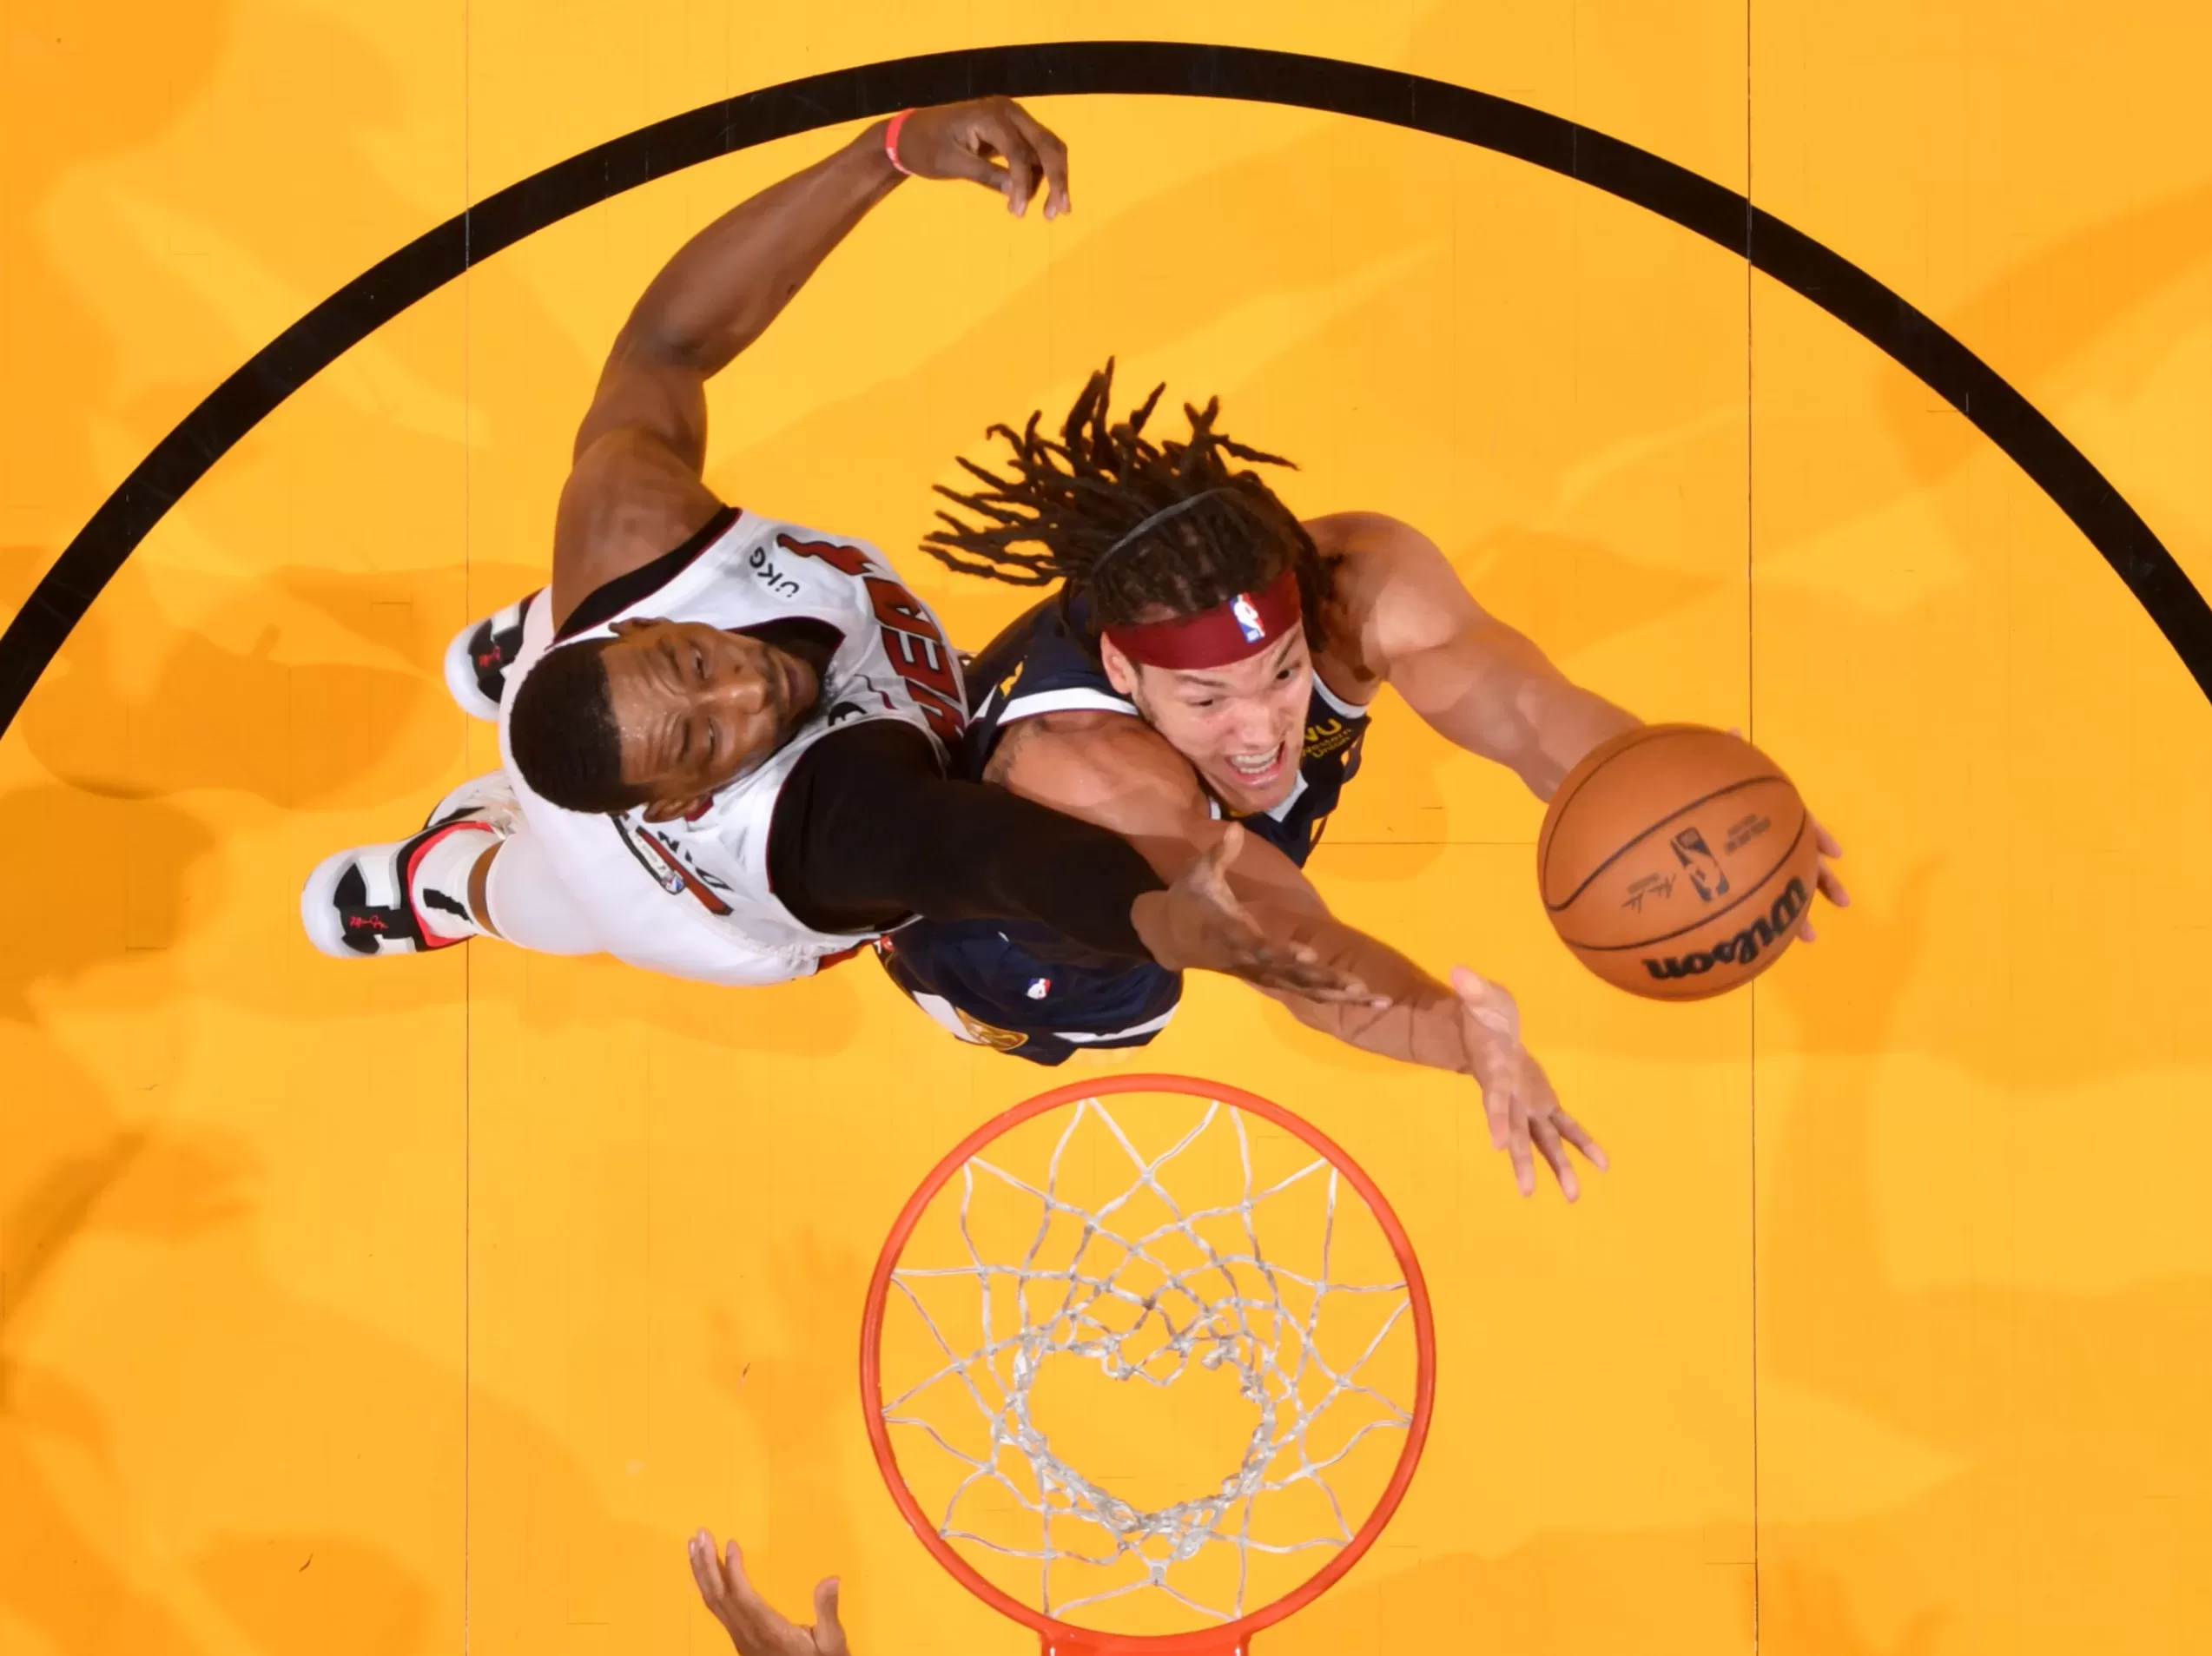 Finais NBA: com shows de Jokic e Murray, Nuggets batem Heat em Miami